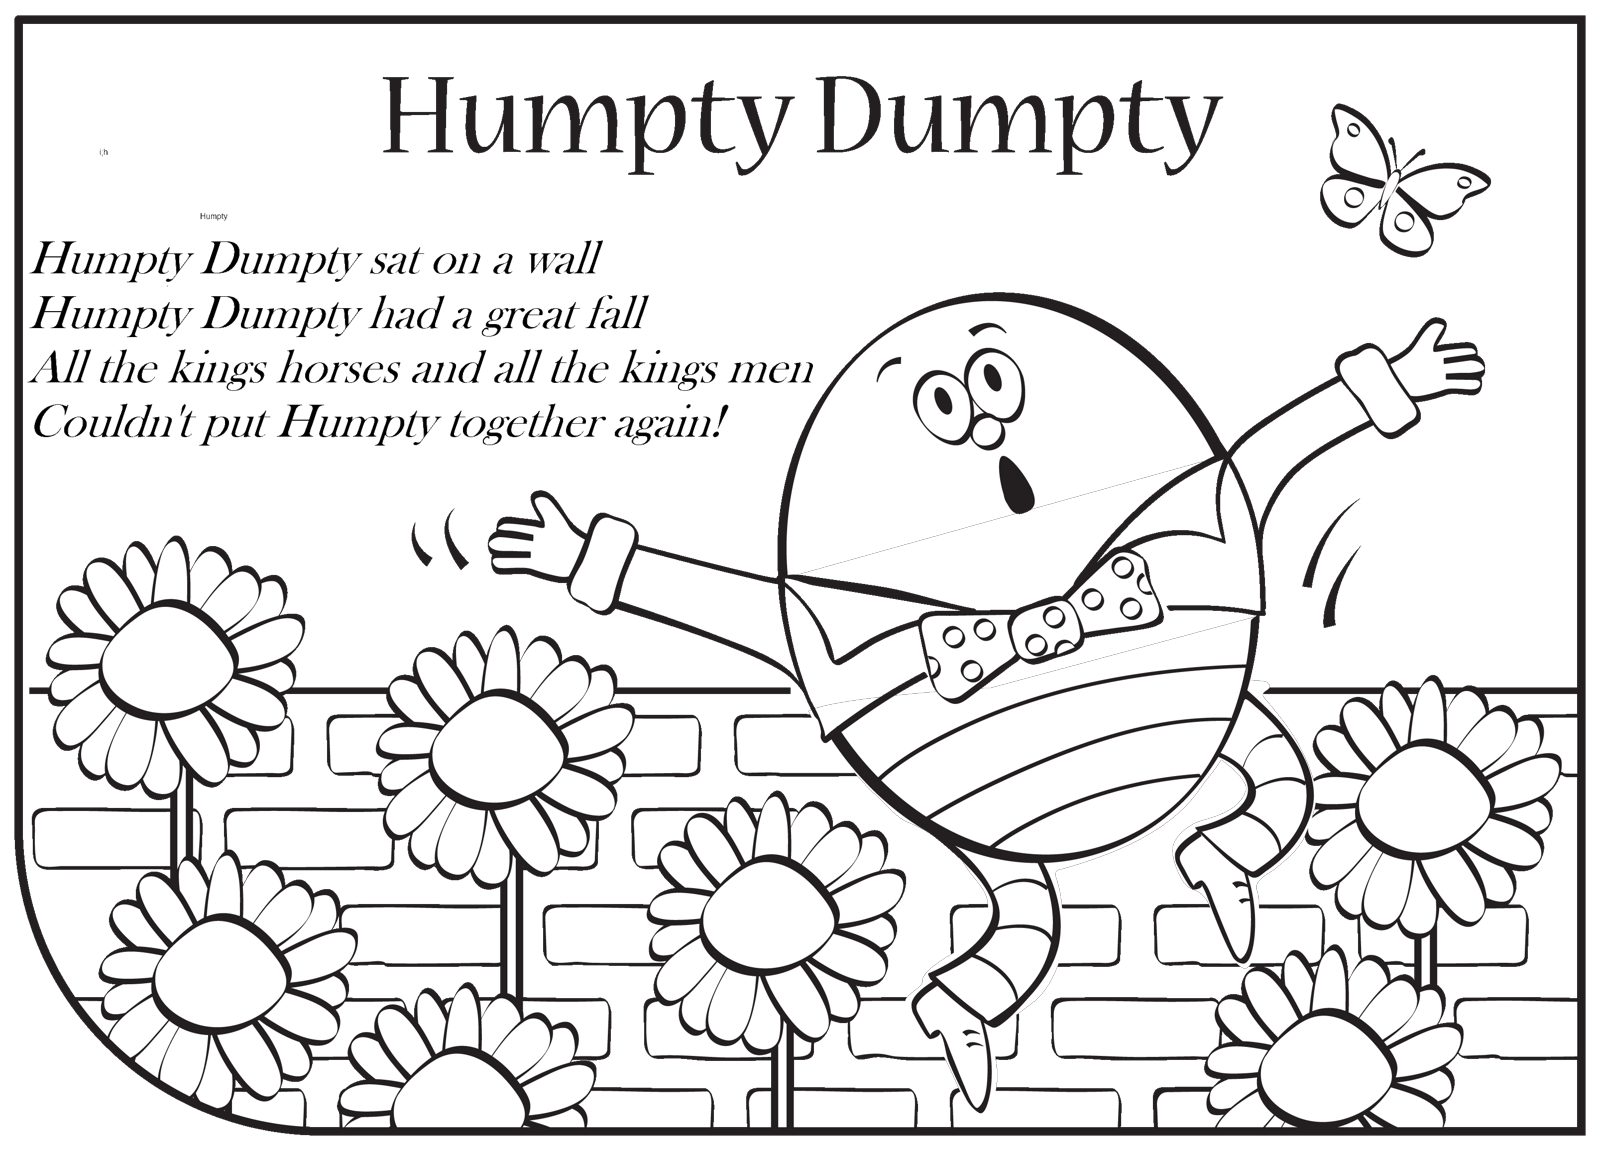 audioBoom / Humpty Dumpty